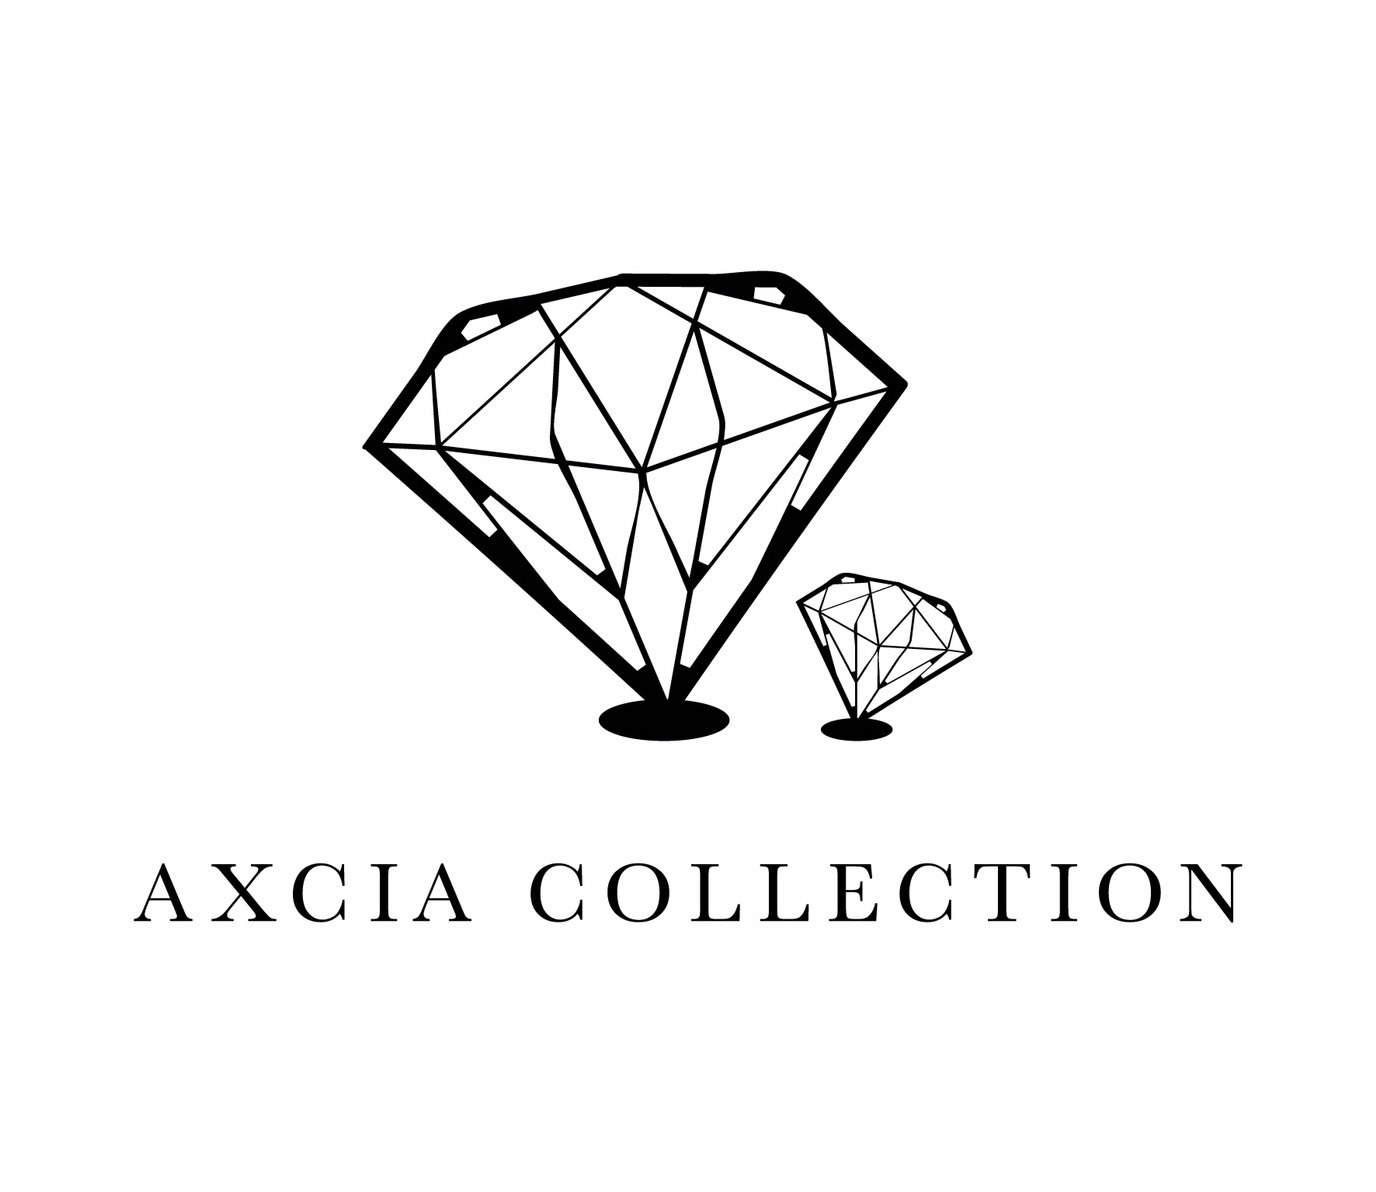 AXCIA COLLECTION